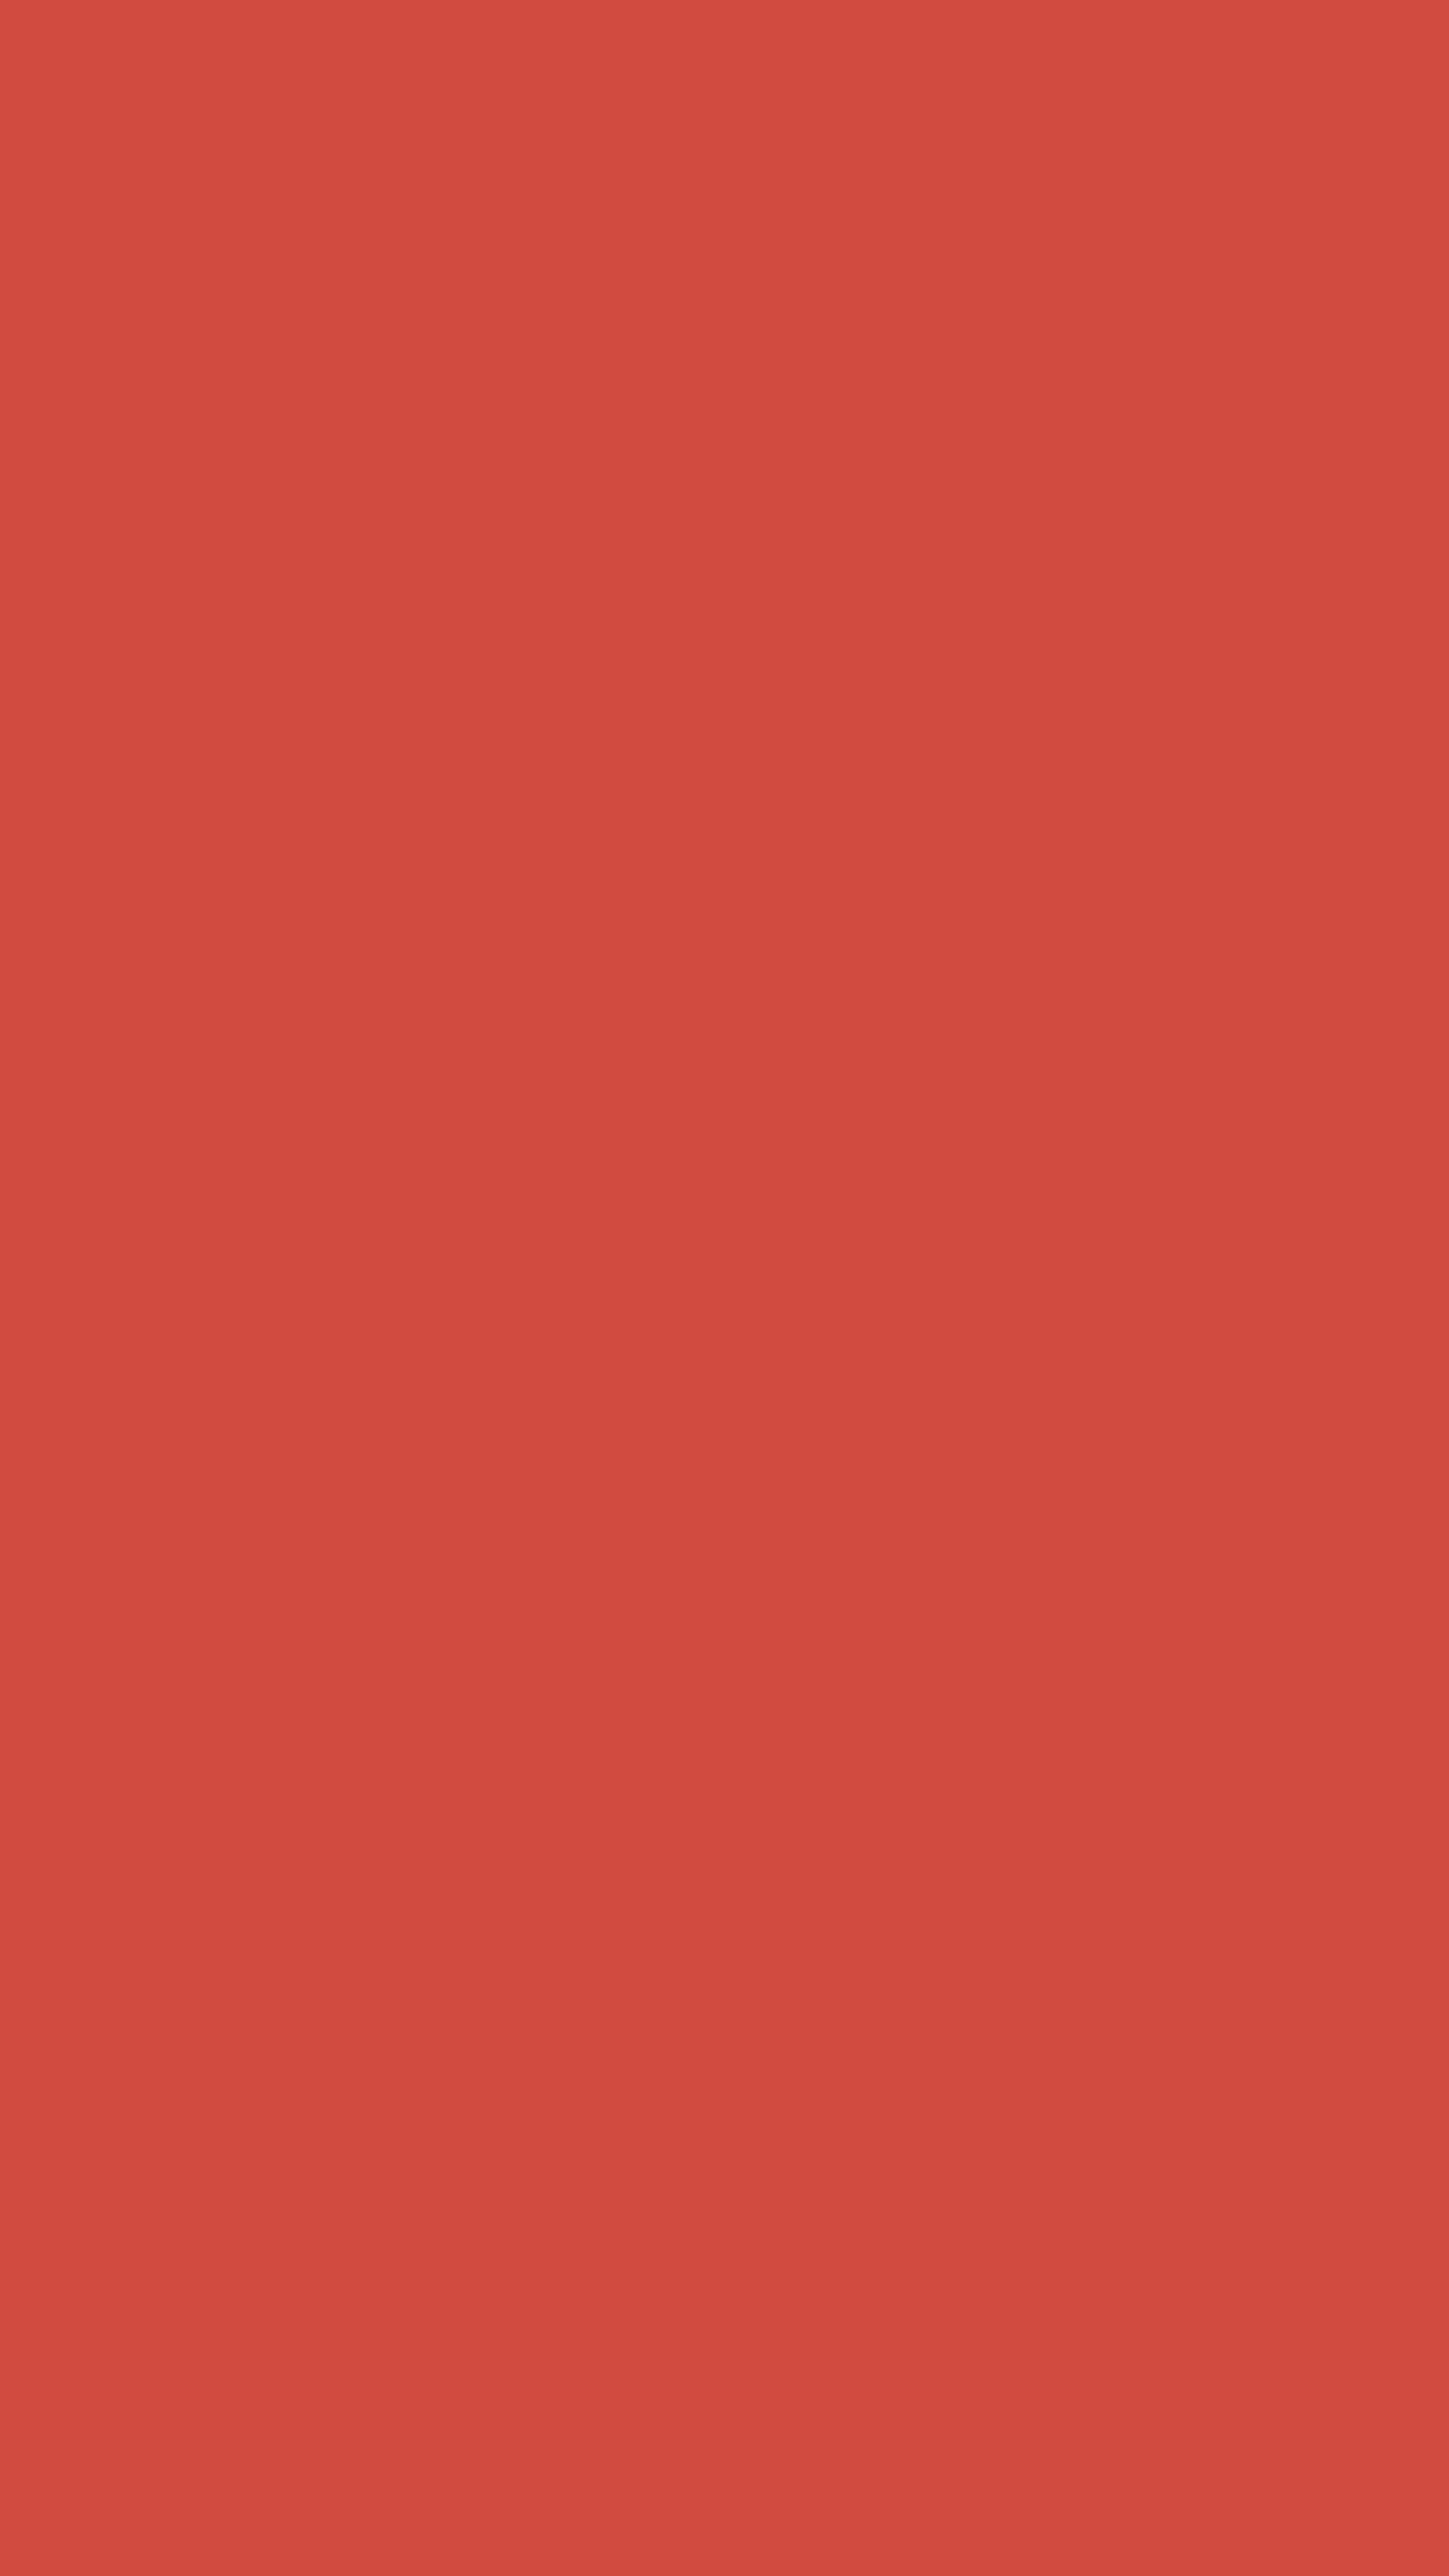 Bright Red Solid Color Background ورق الجدران[4deb0ff9f4ca489e930e]